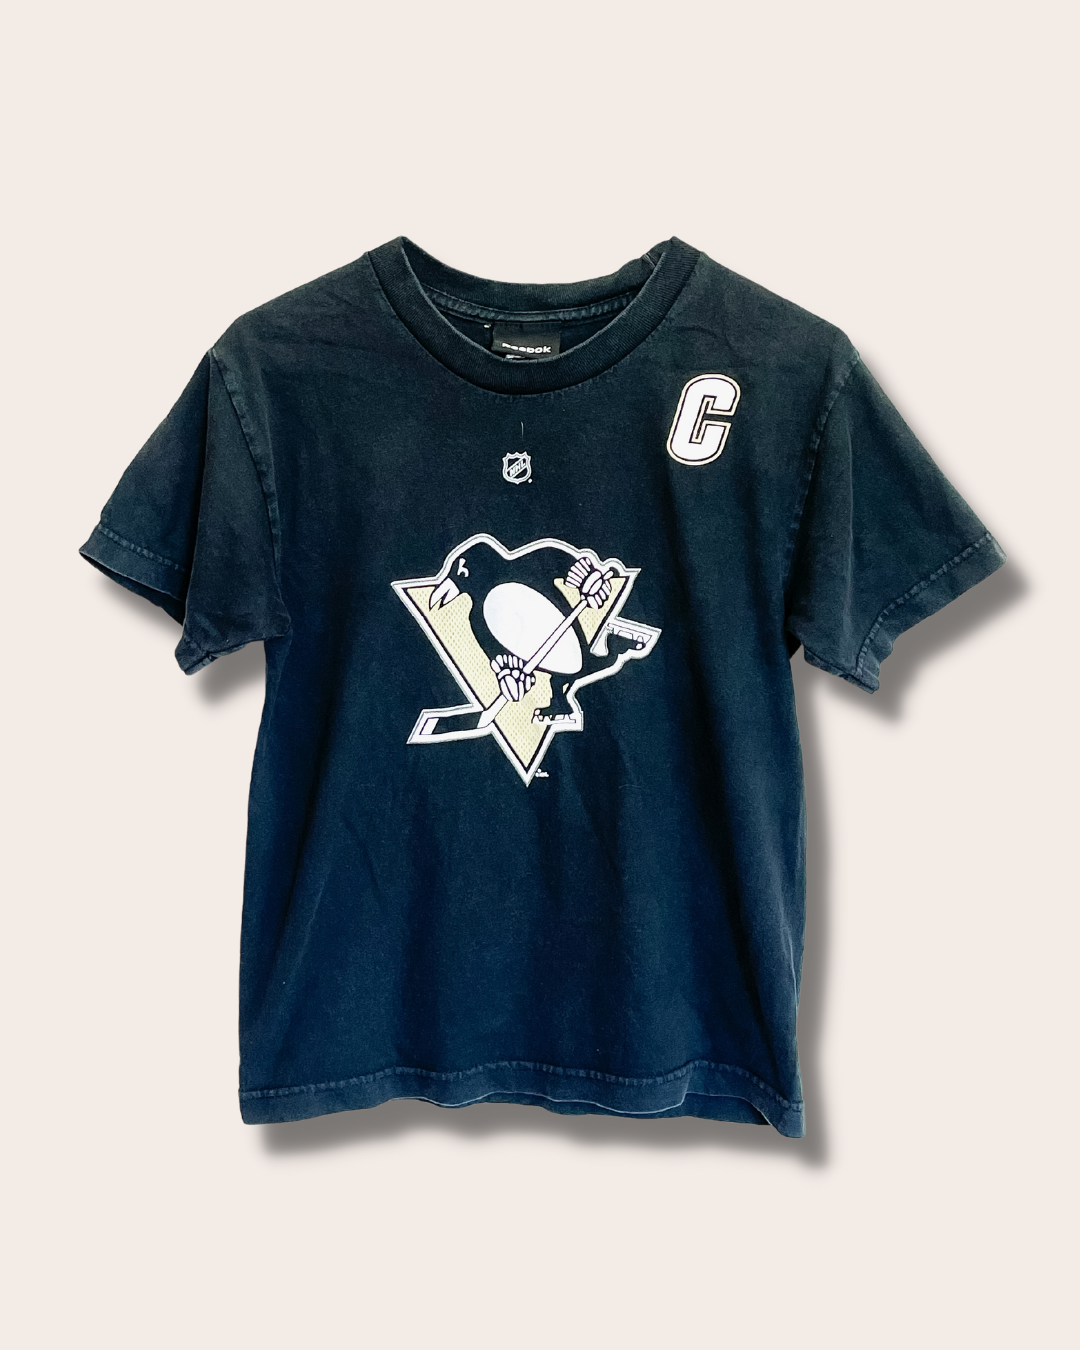 NHL Pittsburgh Penguins Sidney Crosby tee (10-12)